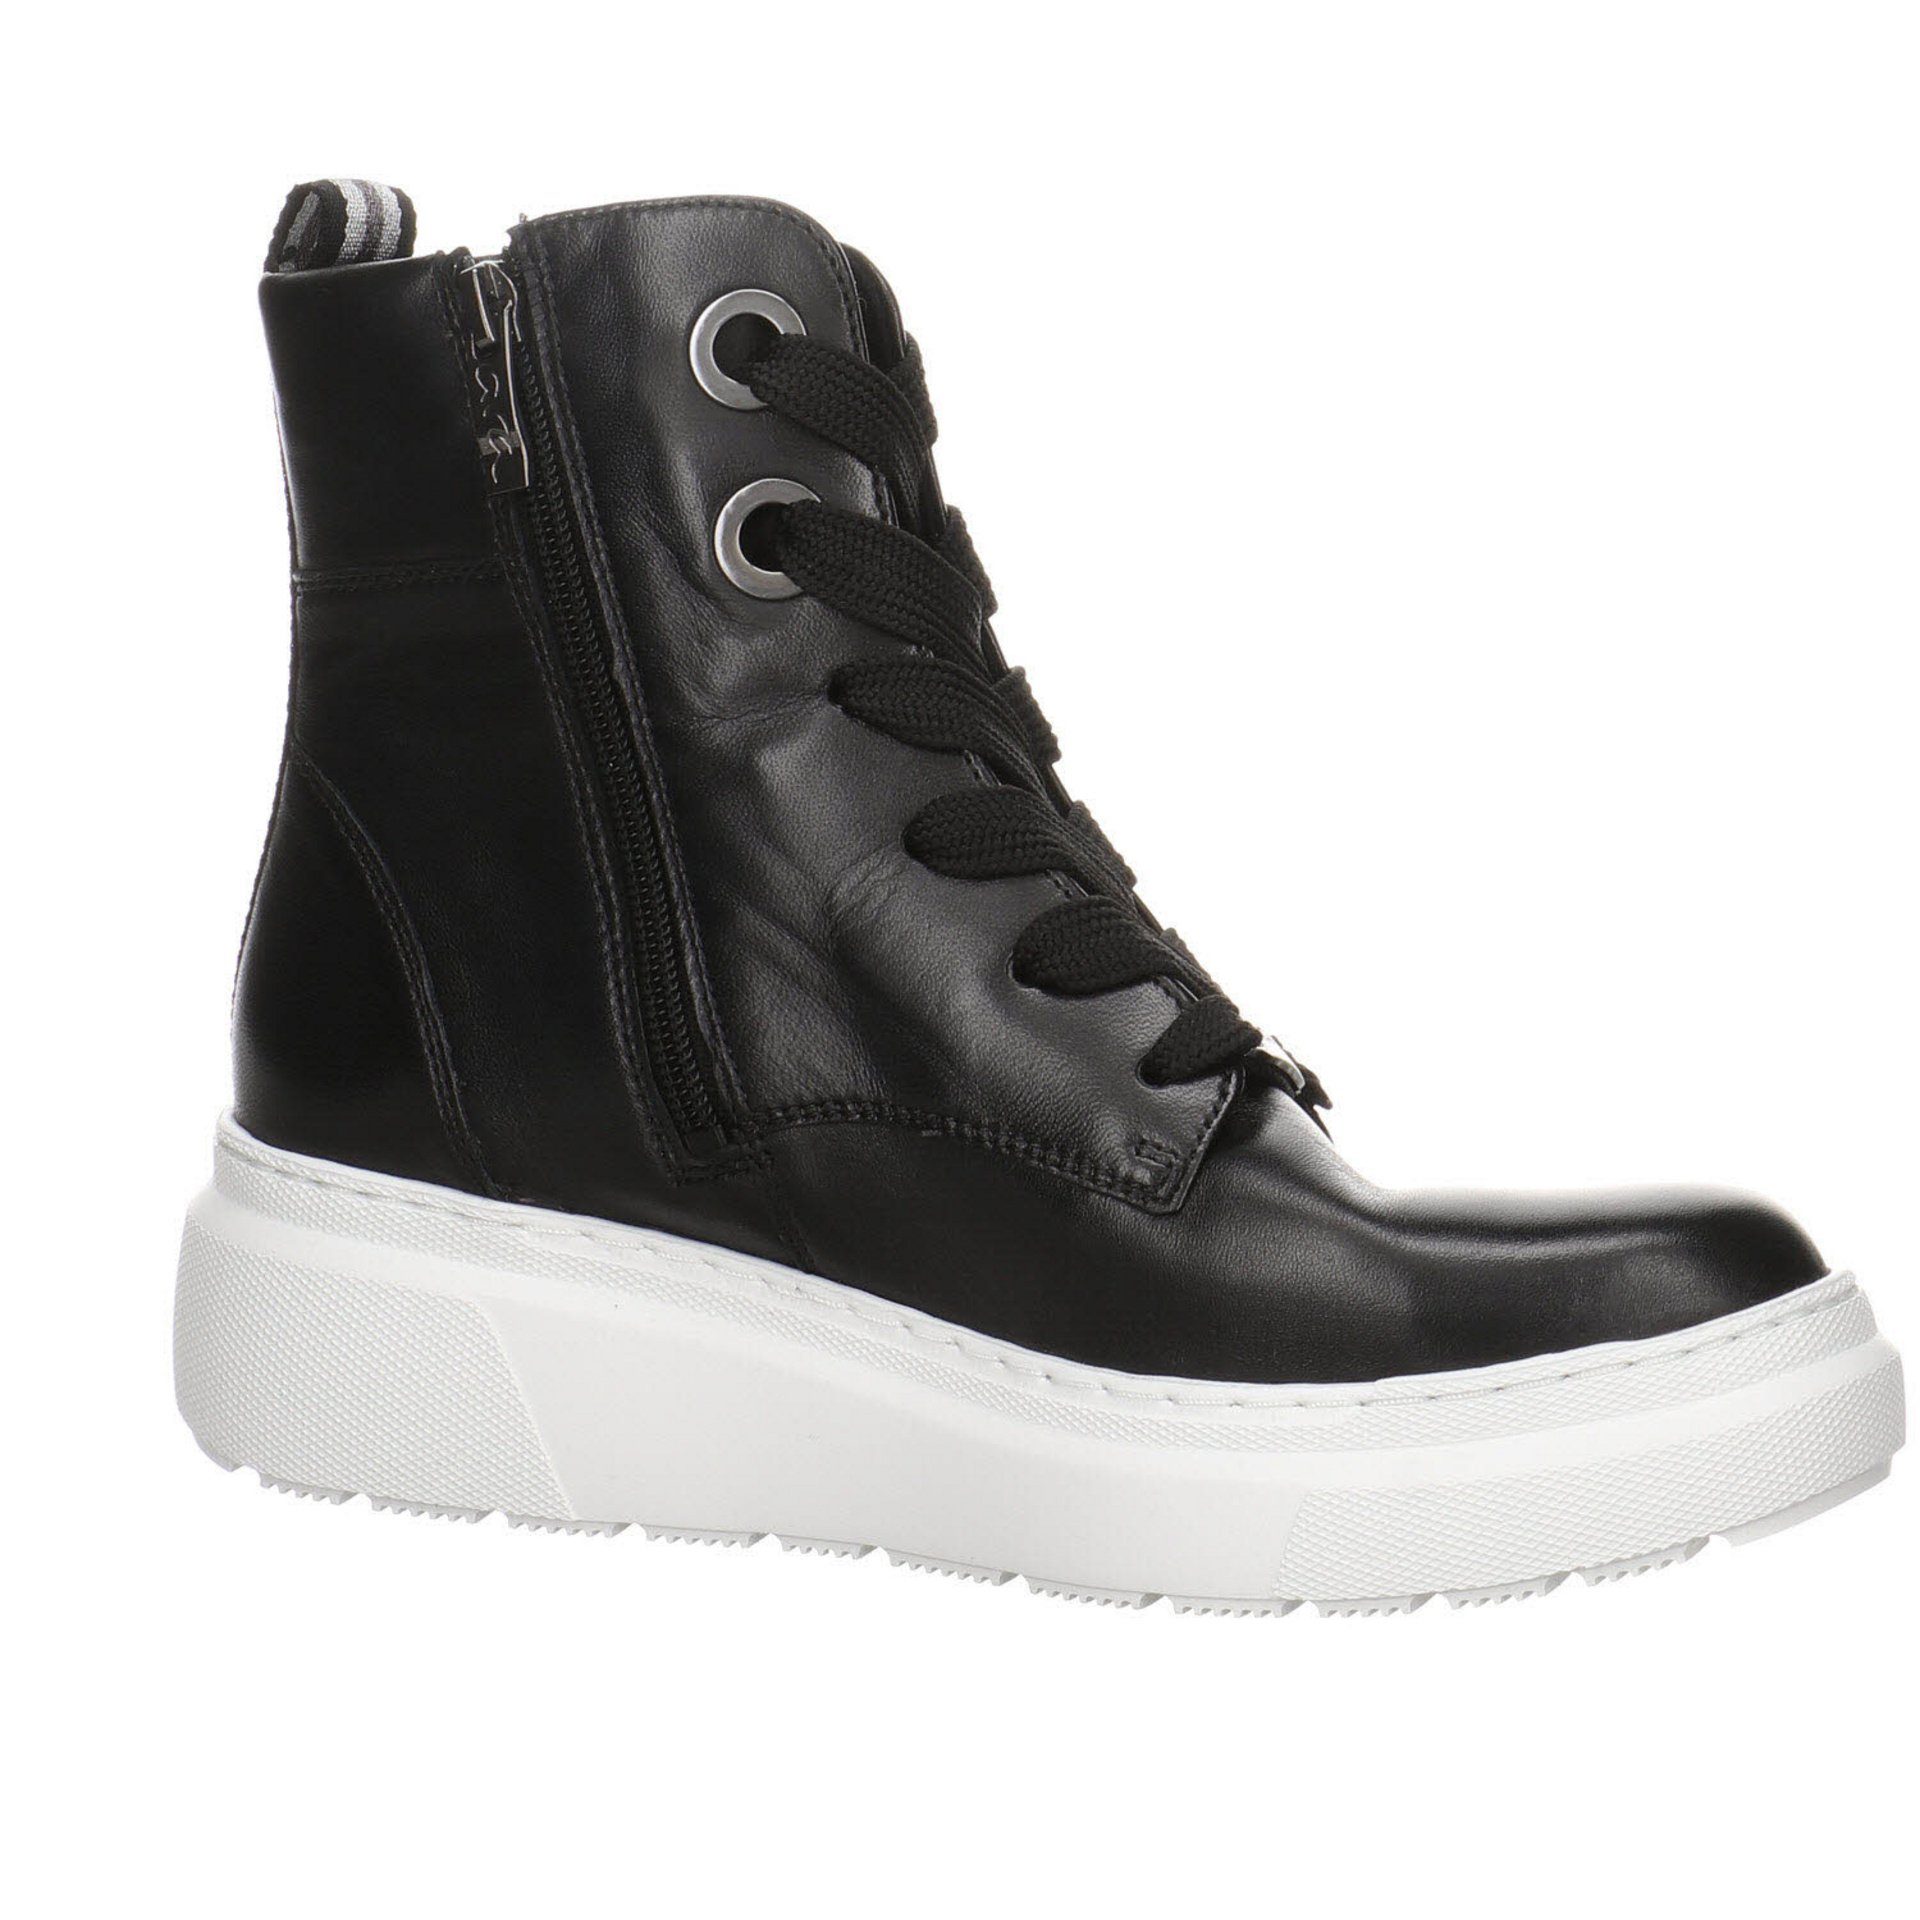 Lausanne-Highsoft Schnürstiefelette Stiefeletten dunkel Textil Schuhe schwarz Ara Damen